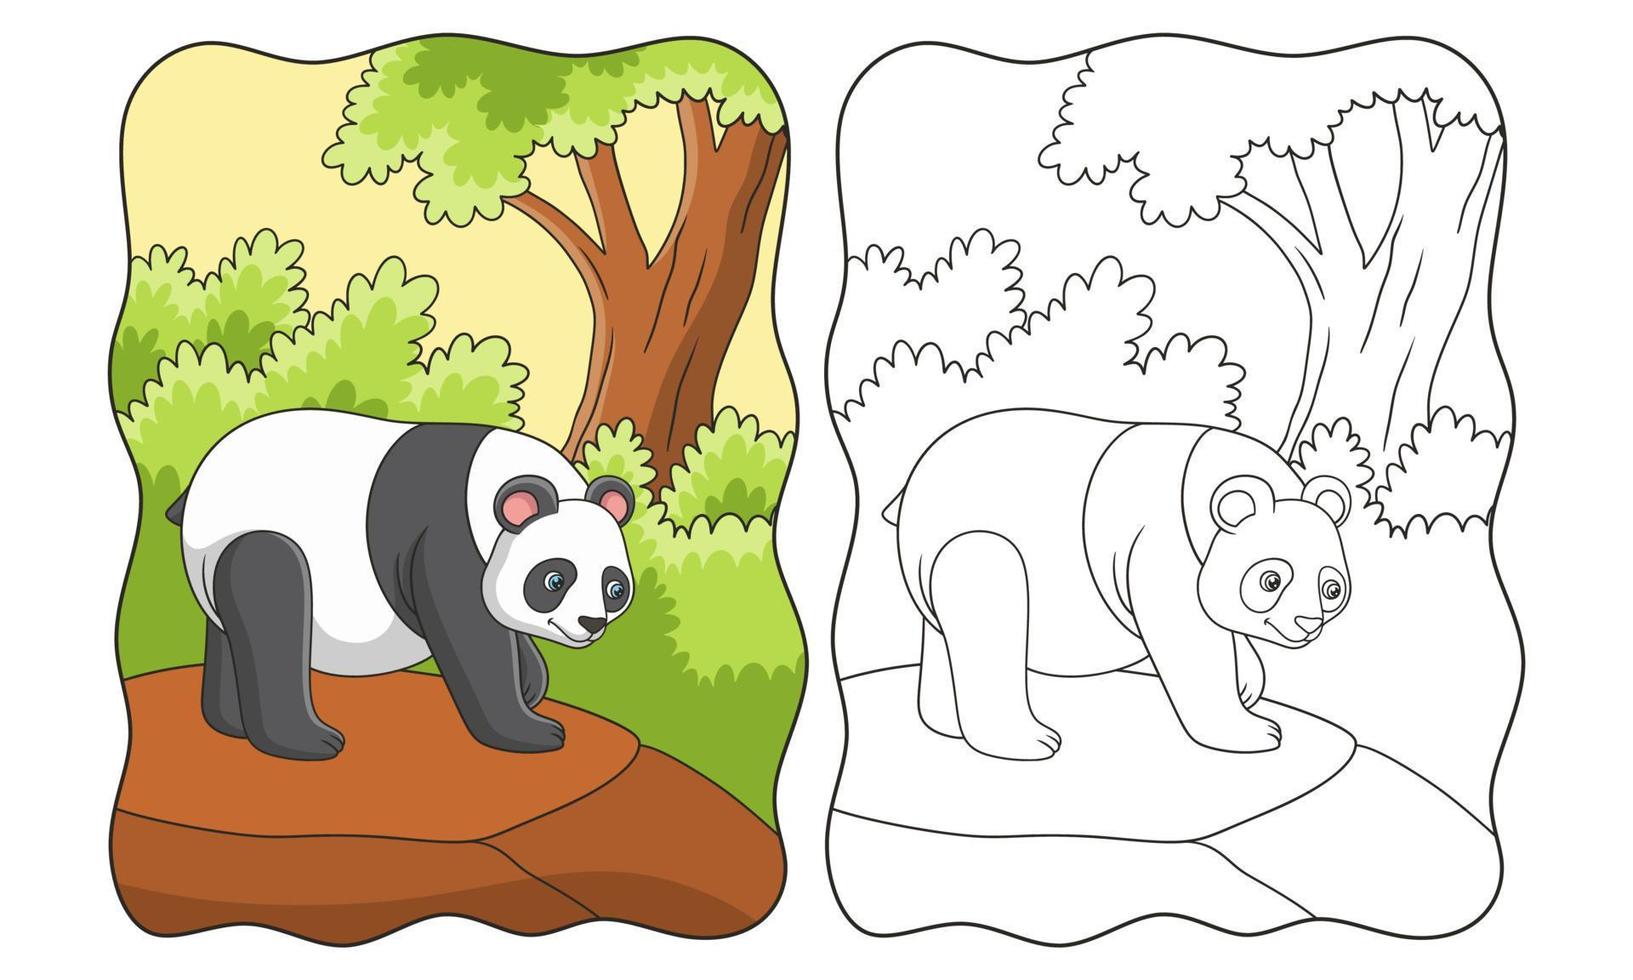 karikaturillustration ein panda, der auf einer klippe mitten in einem wald auf der suche nach nahrung geht vektor